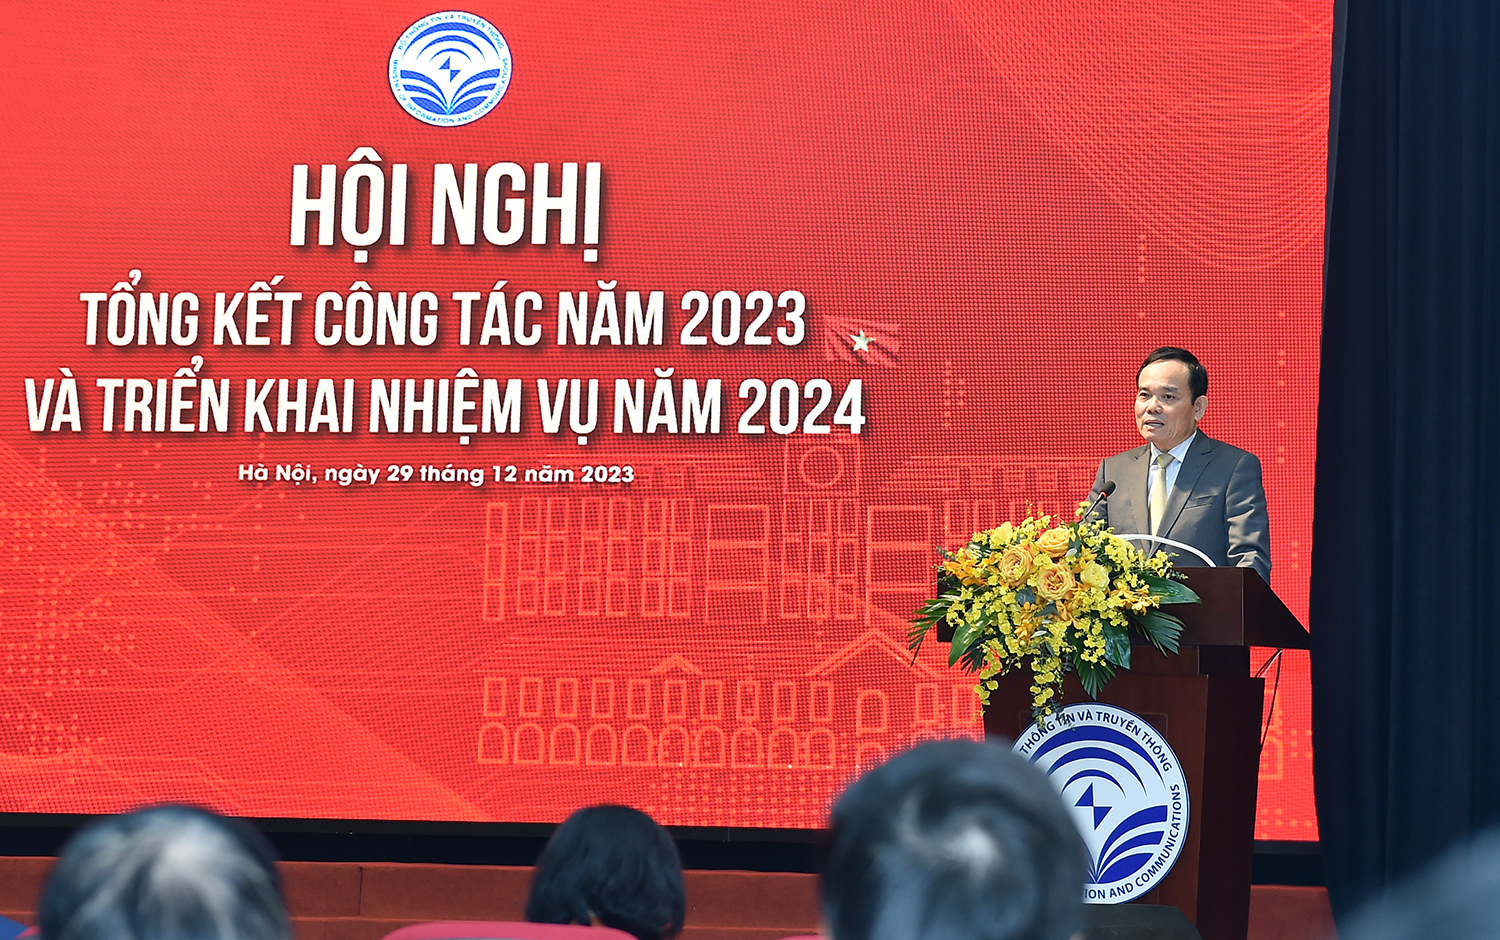 Phó Thủ tướng khẳng định sẽ cùng đồng hành với ngành TT&TT bởi chặng đường phía trước còn không ít khó khăn, thách thức - Ảnh: VGP/Hải Minh